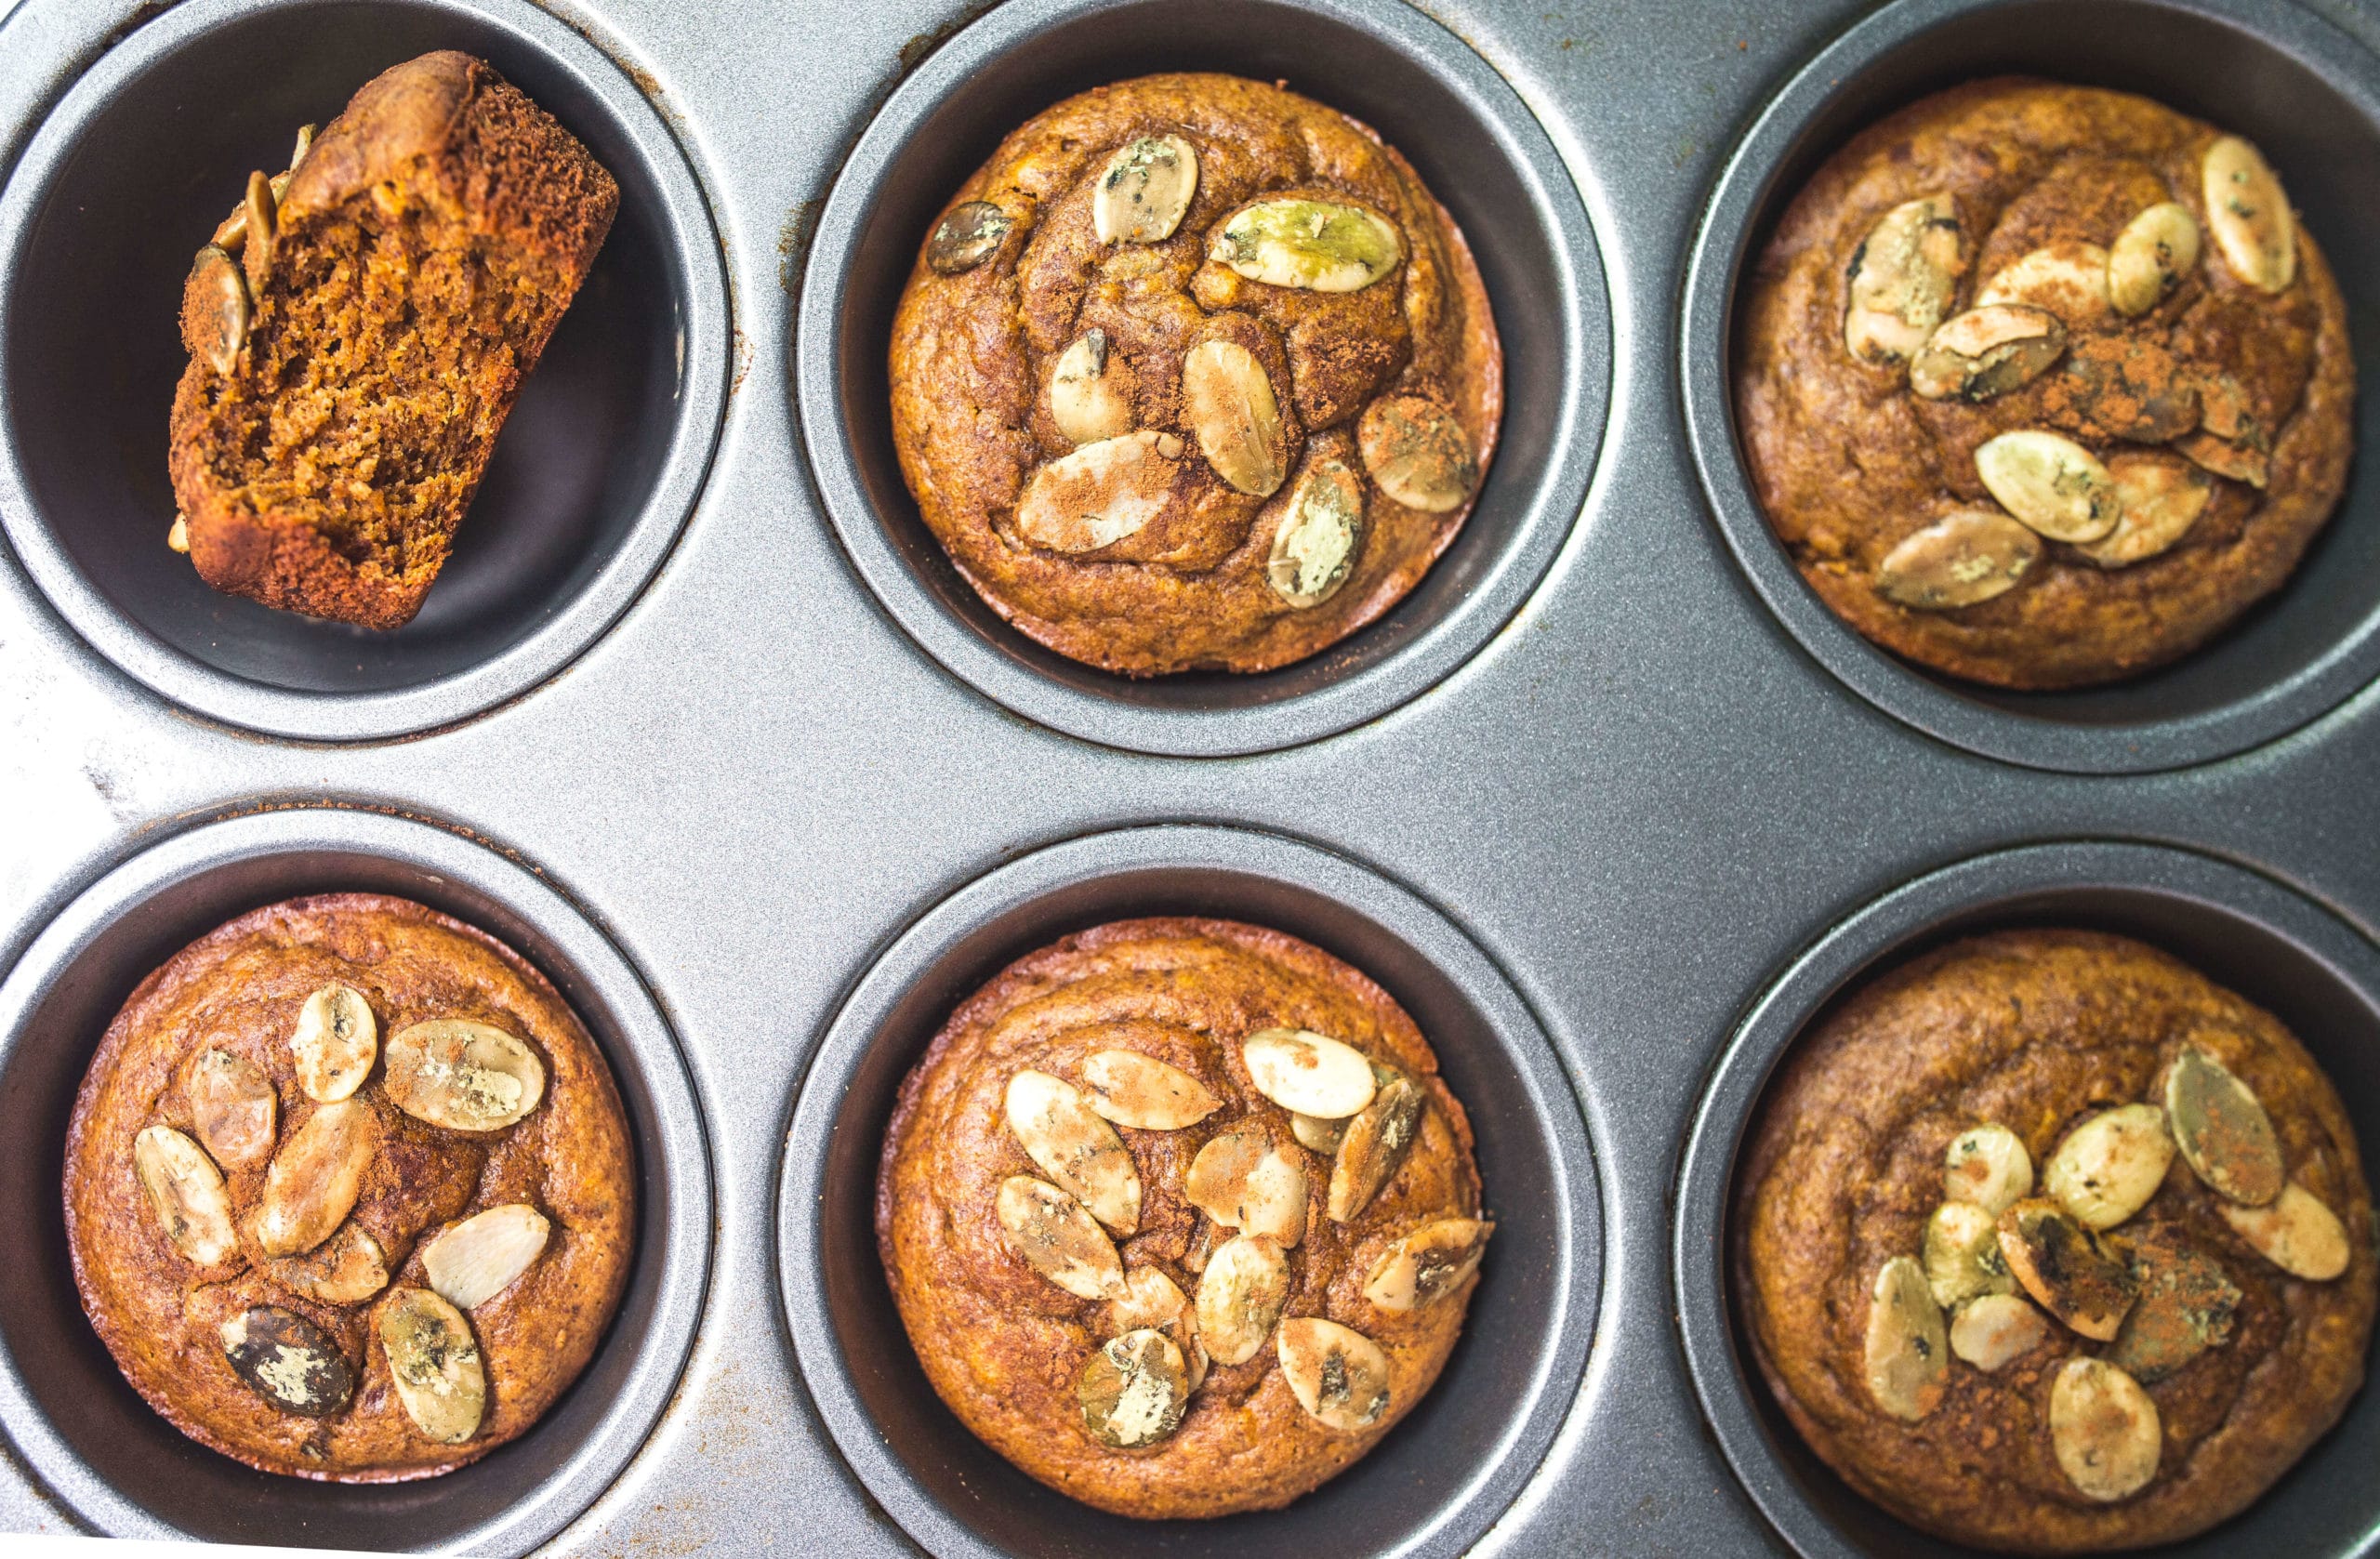 dýňové muffiny bez mouky přes Food by Mars (Paleo, bez rafinovaného cukru, bez lepku, bez zrna)